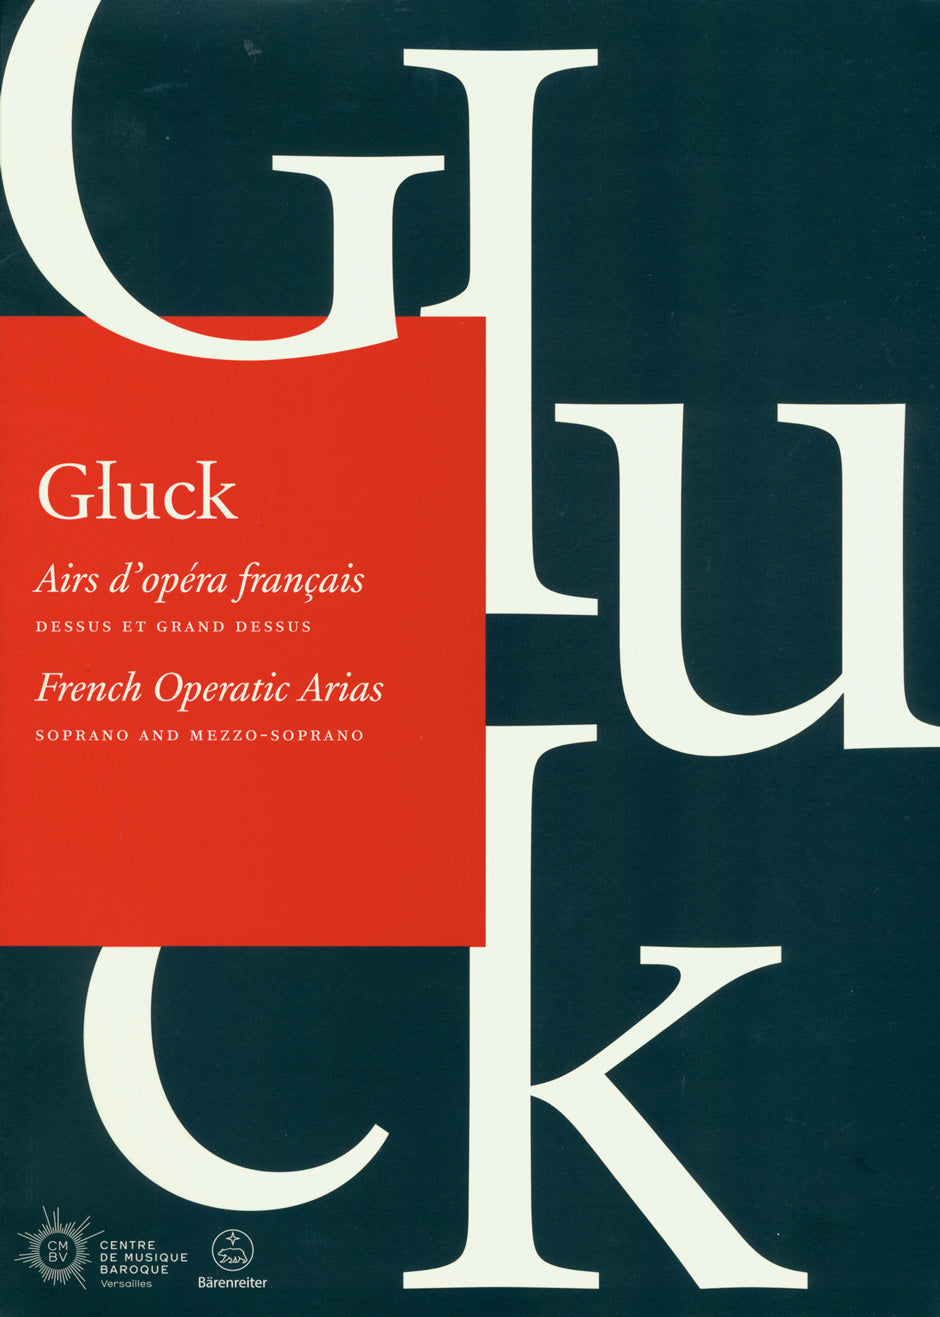 Gluck French Operatic Arias (Soprano and Mezzo-soprano)